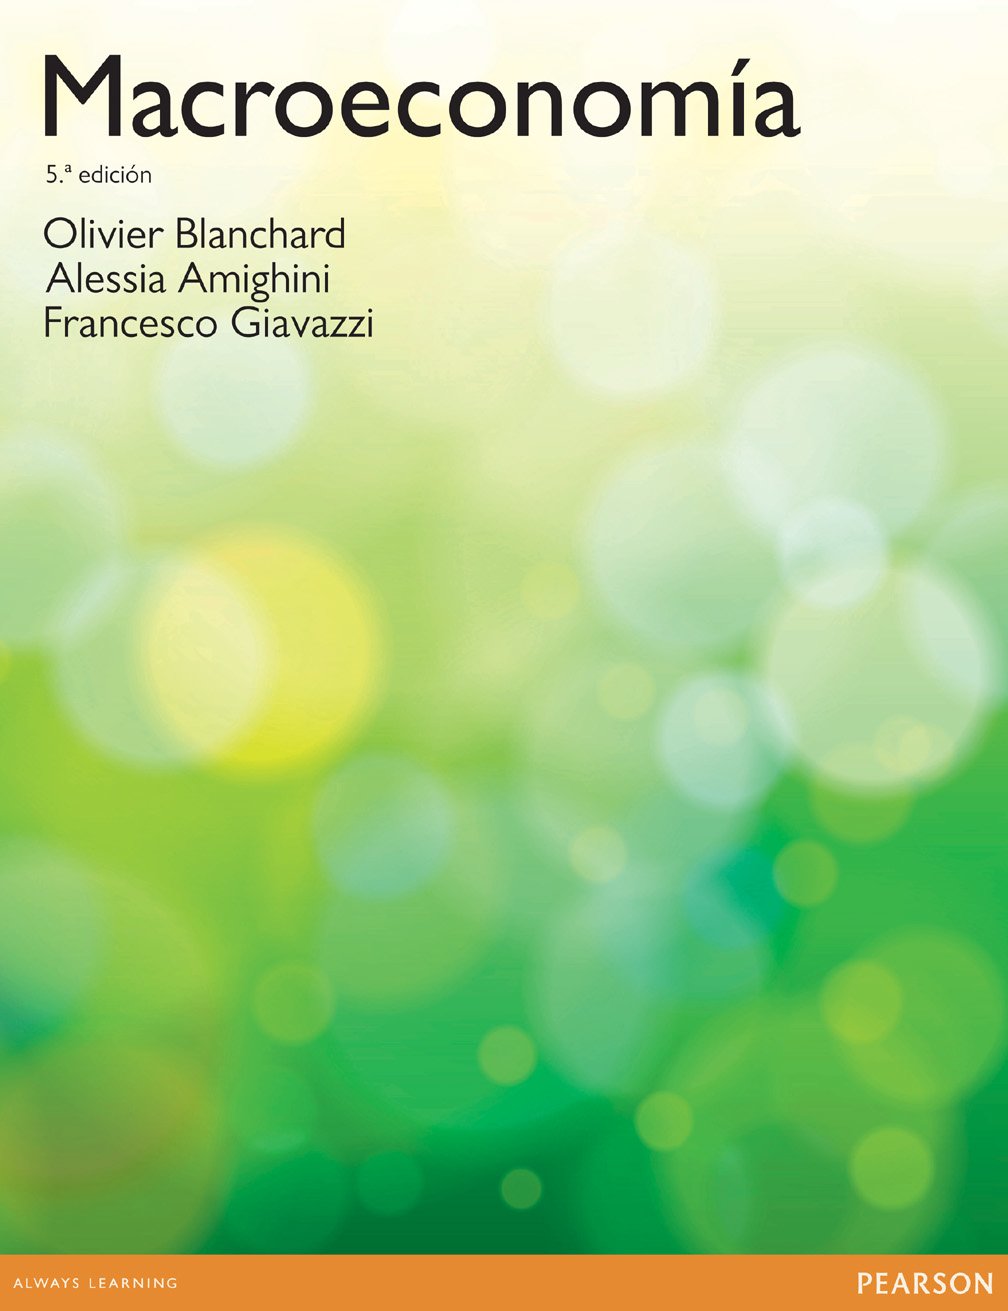 Macroeconomía 5 Edición Olivier Blanchard PDF